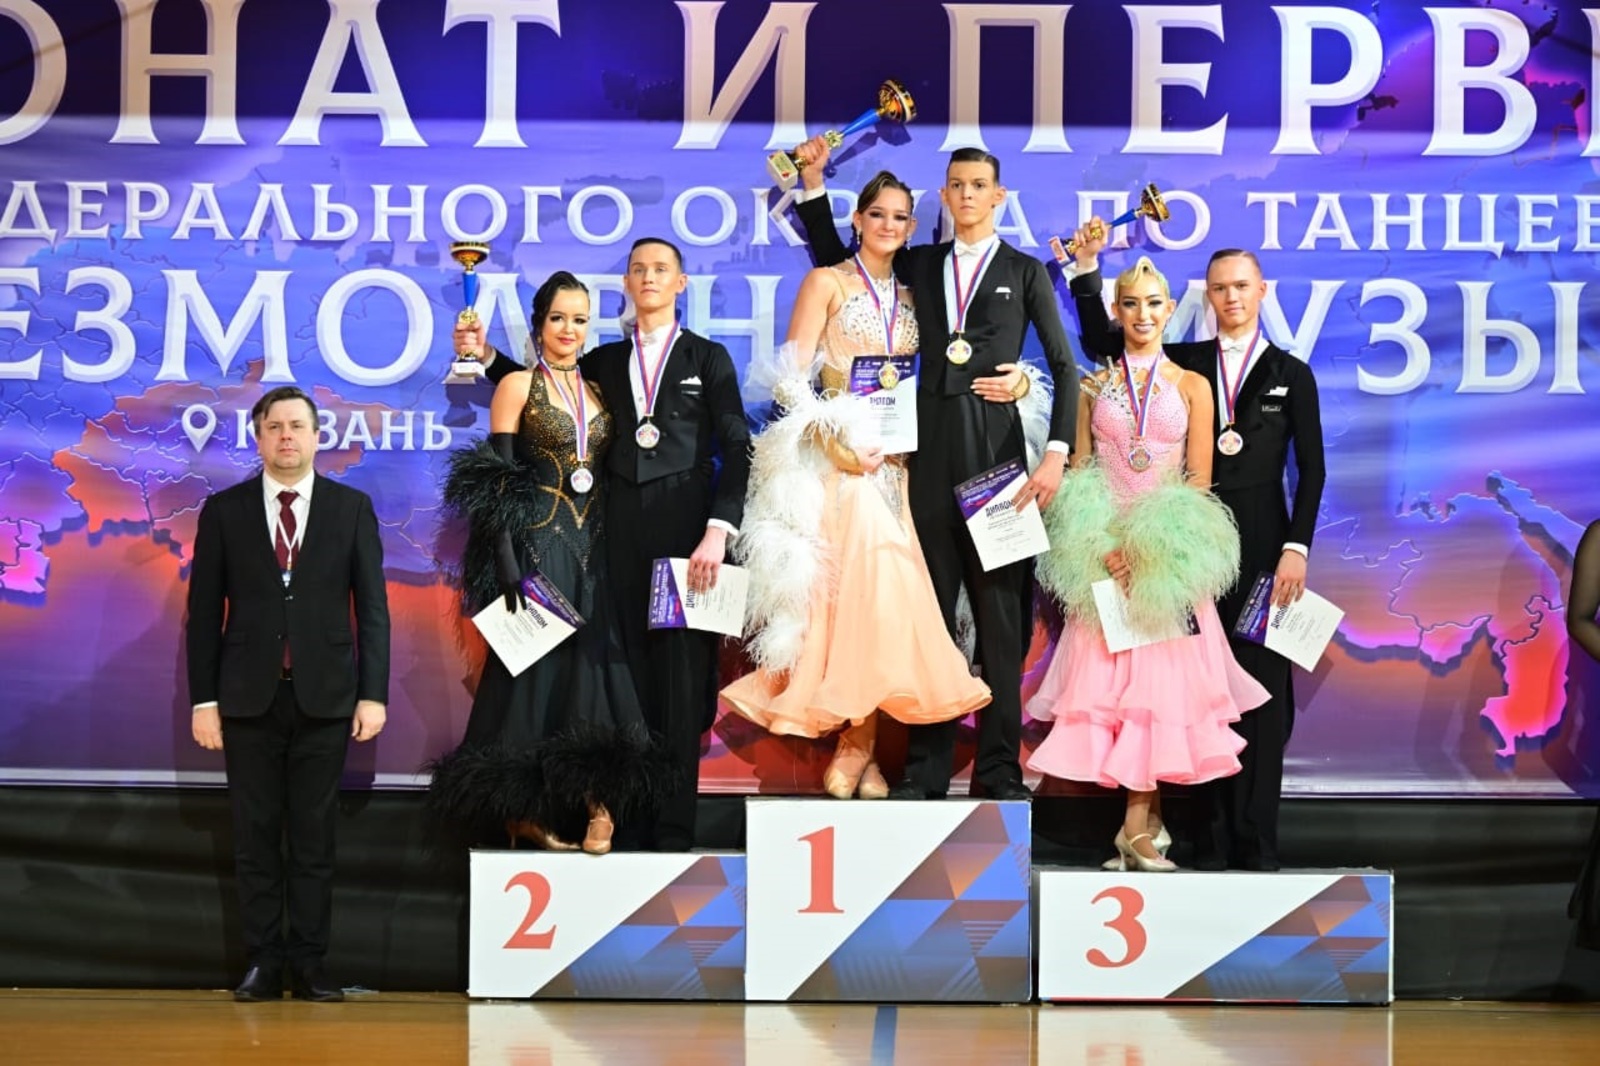 Анастасия и Ярослав Валиахметовы стали чемпионами Приволжского федерального округа по спортивно-бальным танцам.